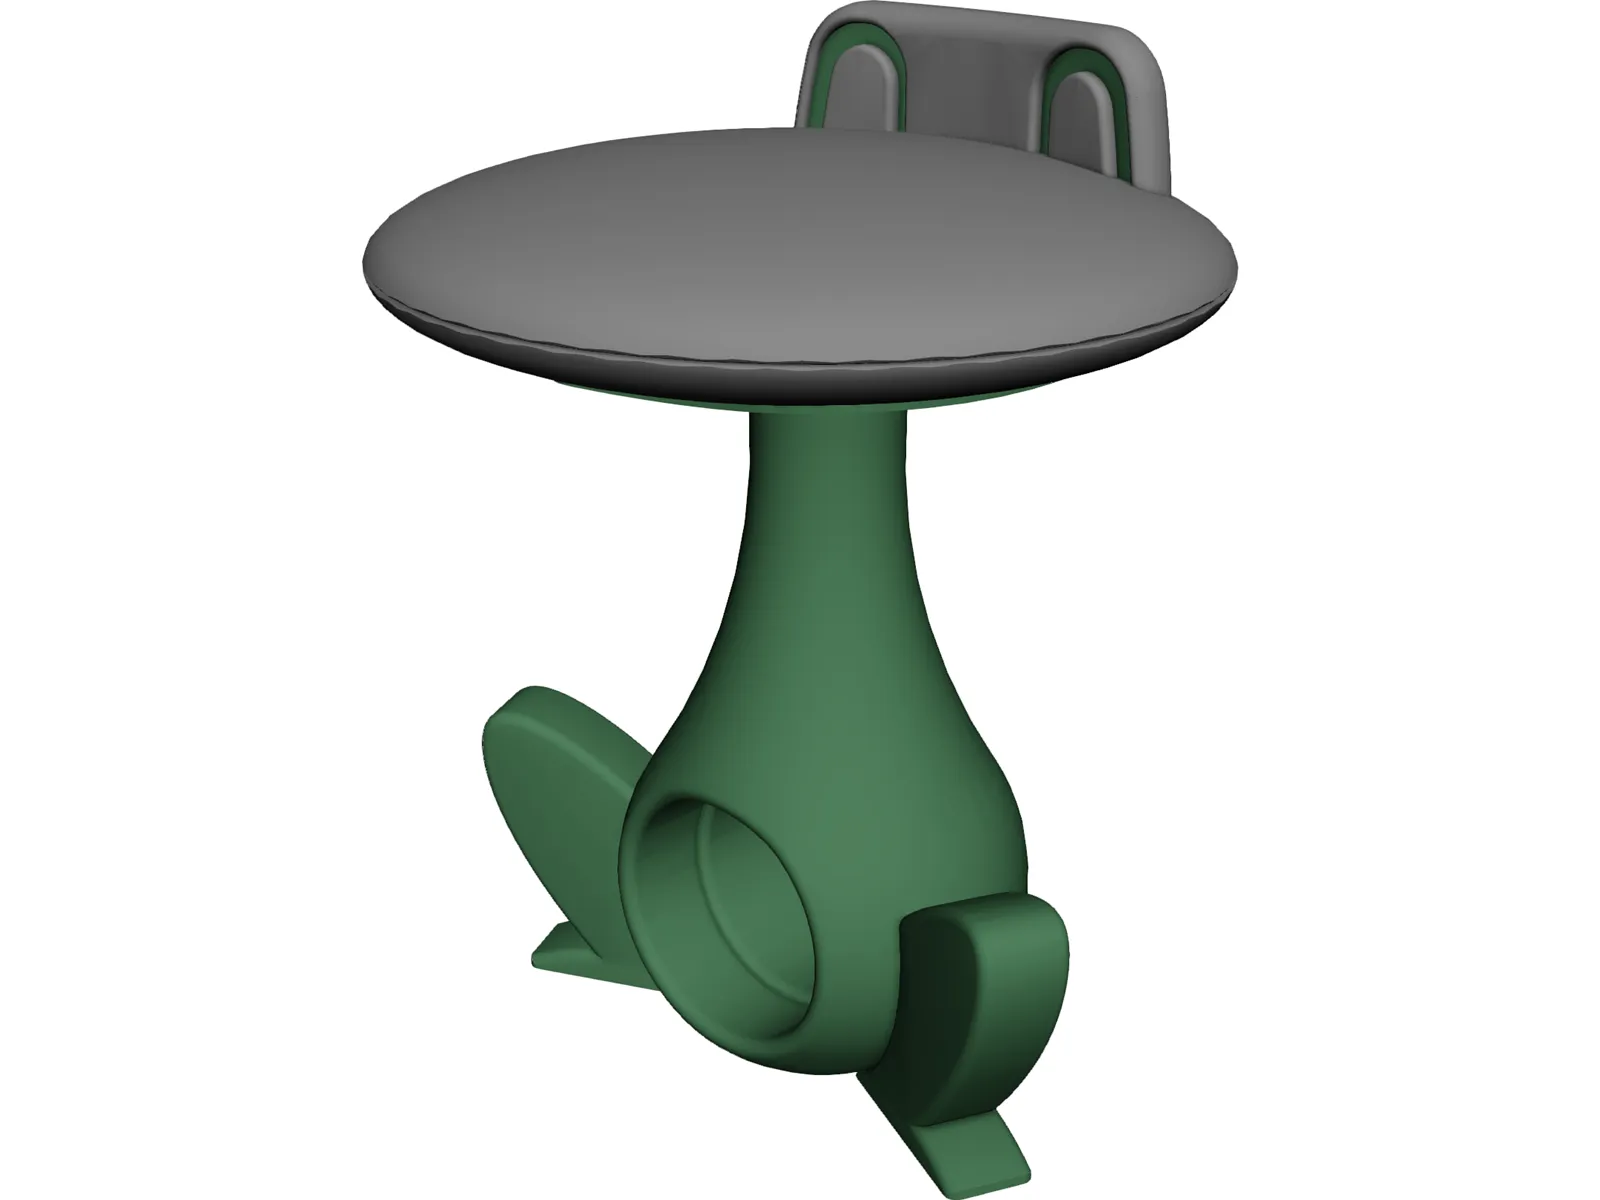 Froggy Barstool 3D Model